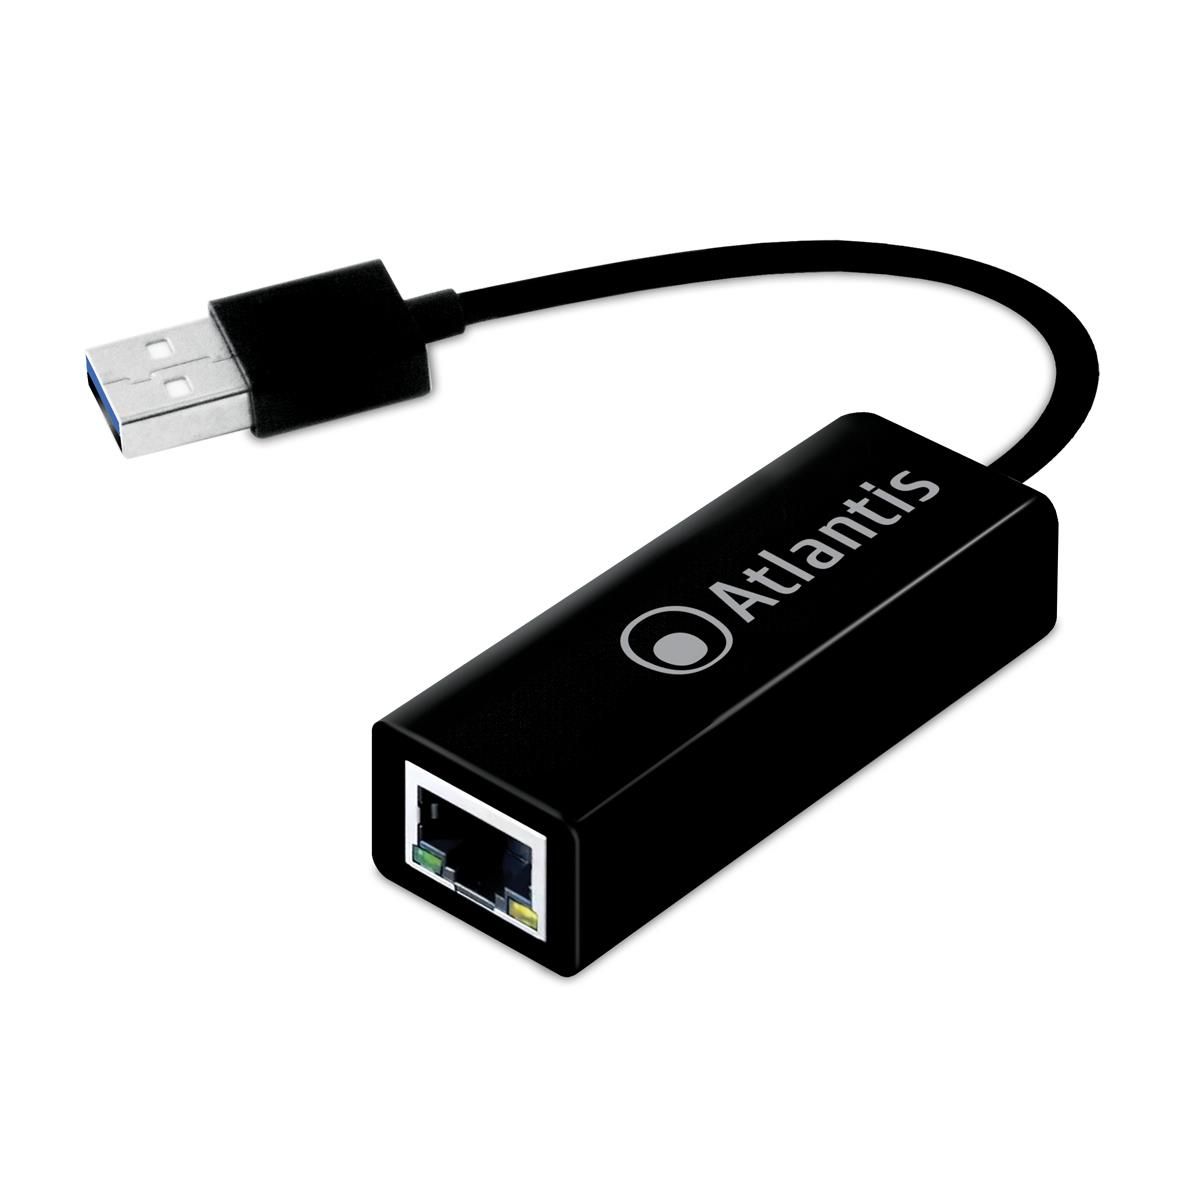 EDIMAX - Adattatori di rete - Adattatori USB - Adattatore Fast Ethernet USB  2.0